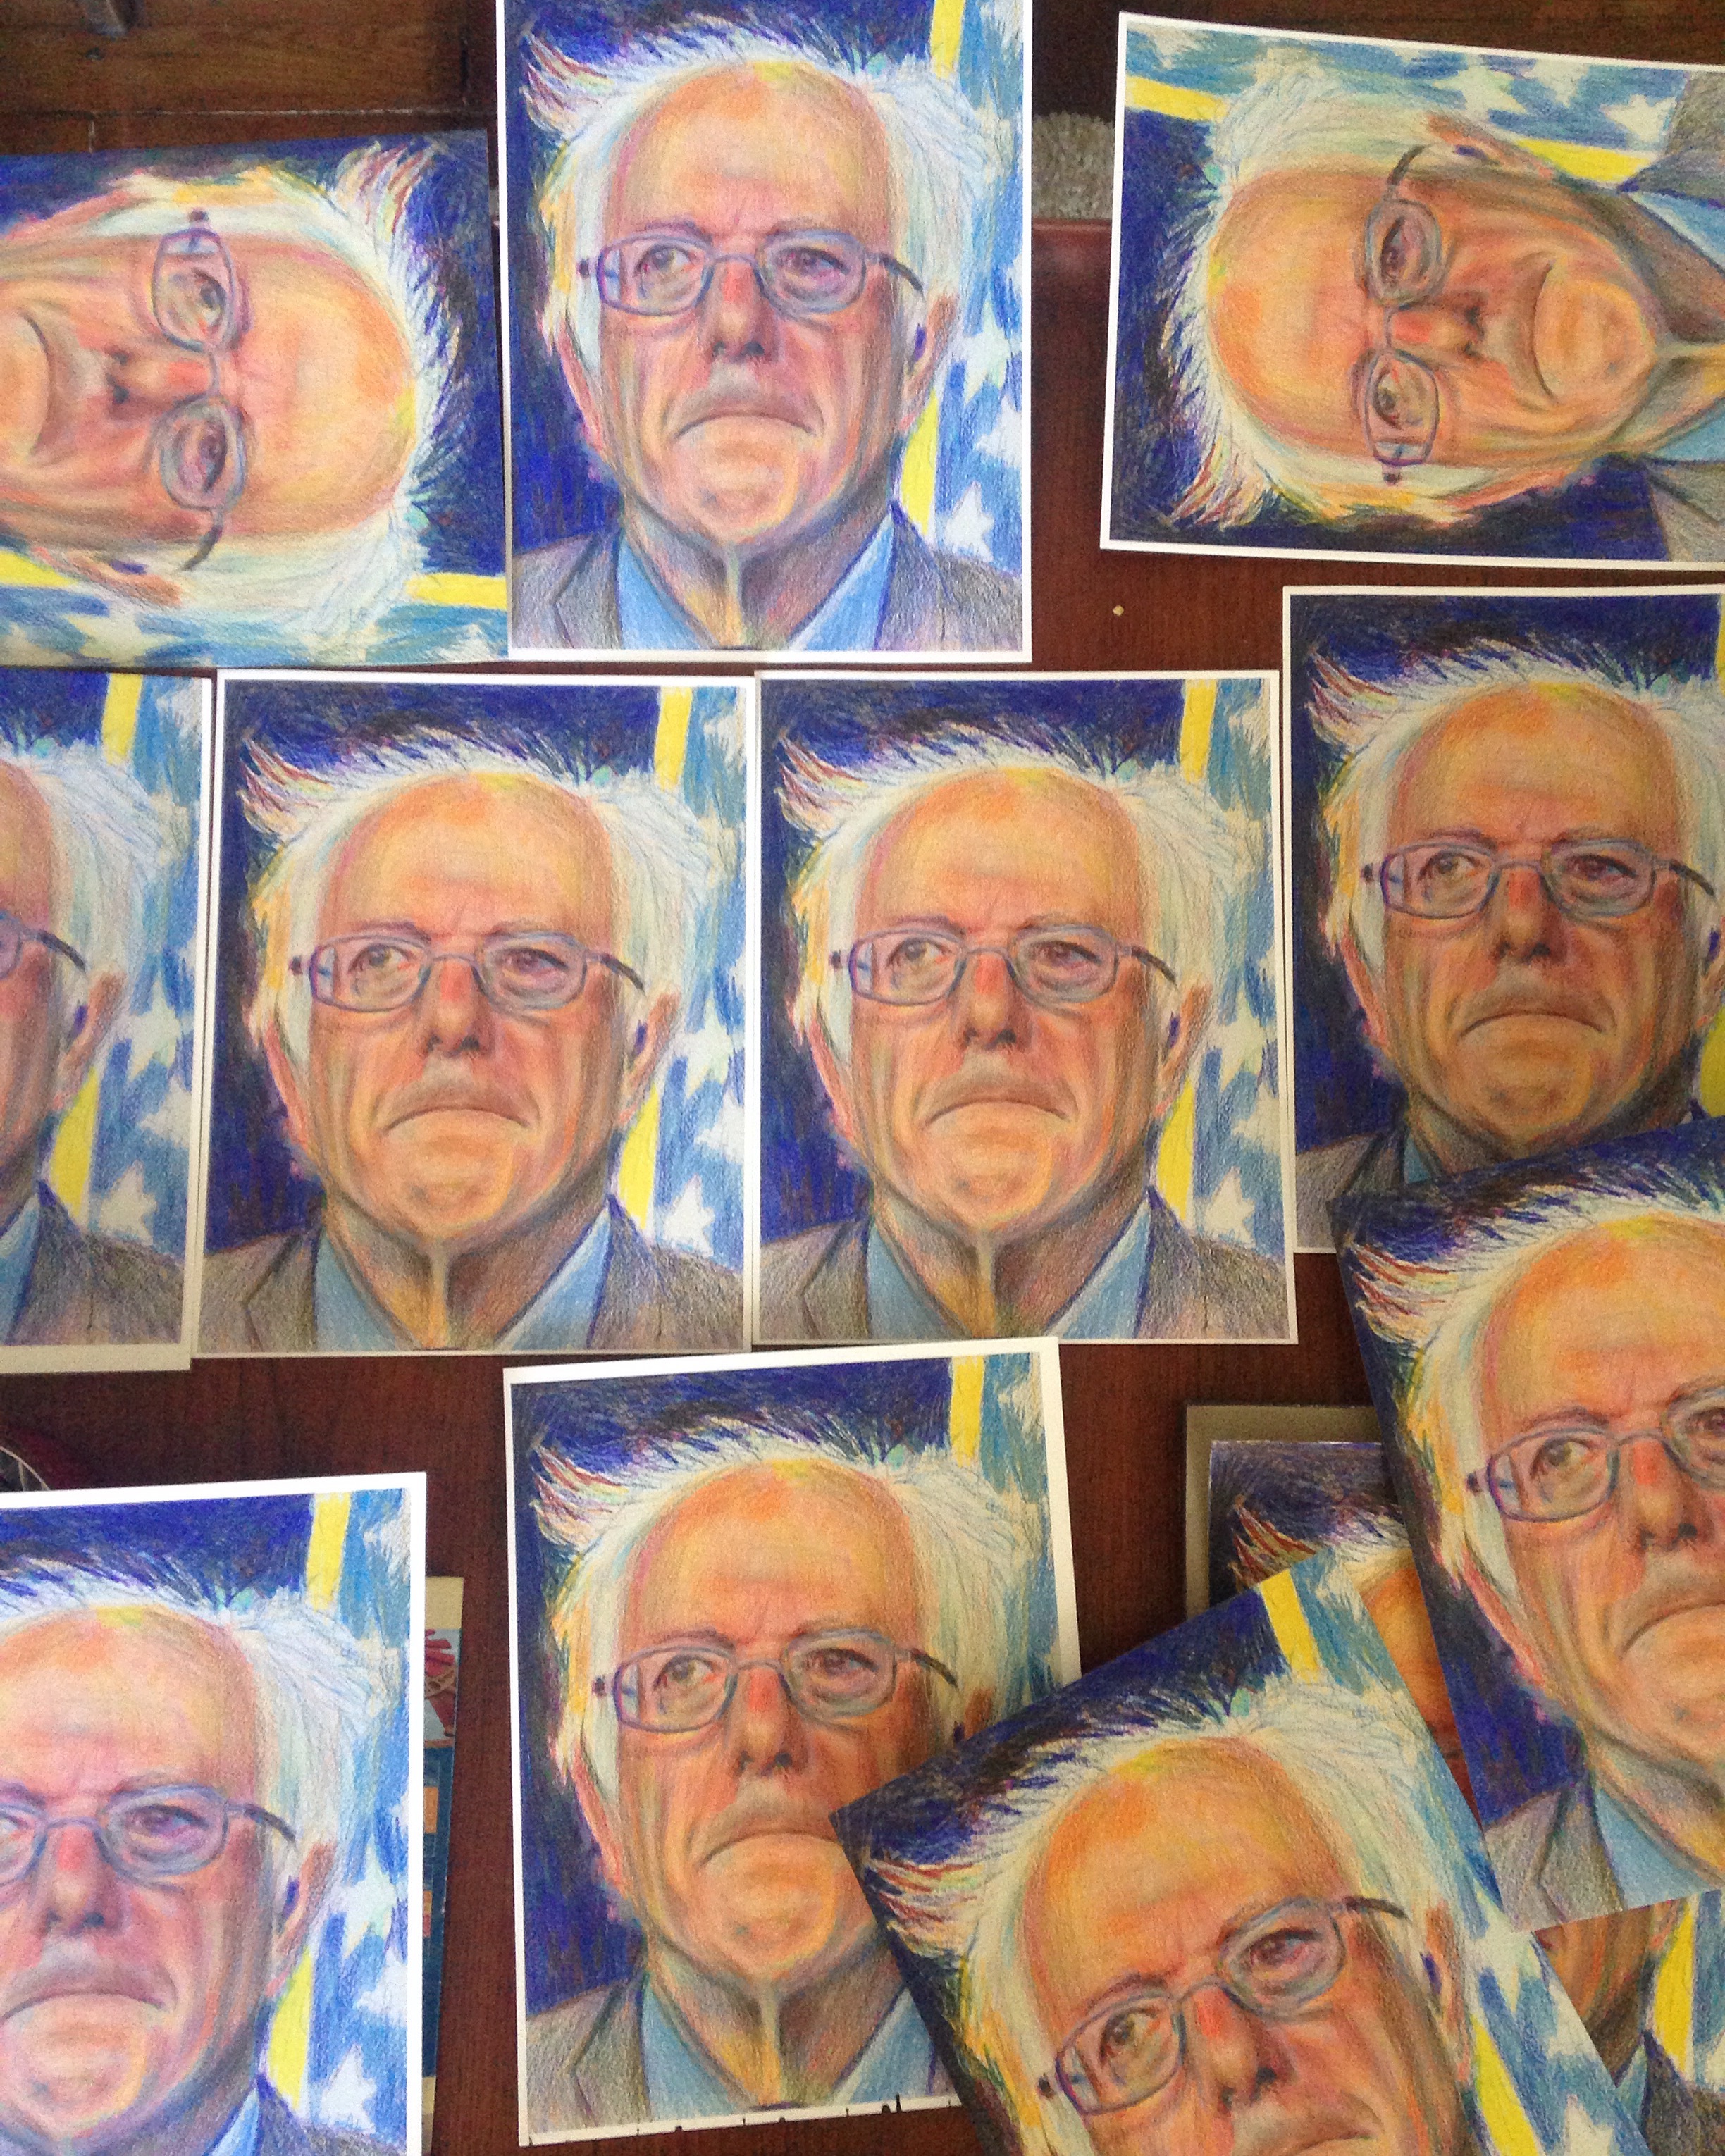 Bernie Sanders Artwork by Noel Hefele